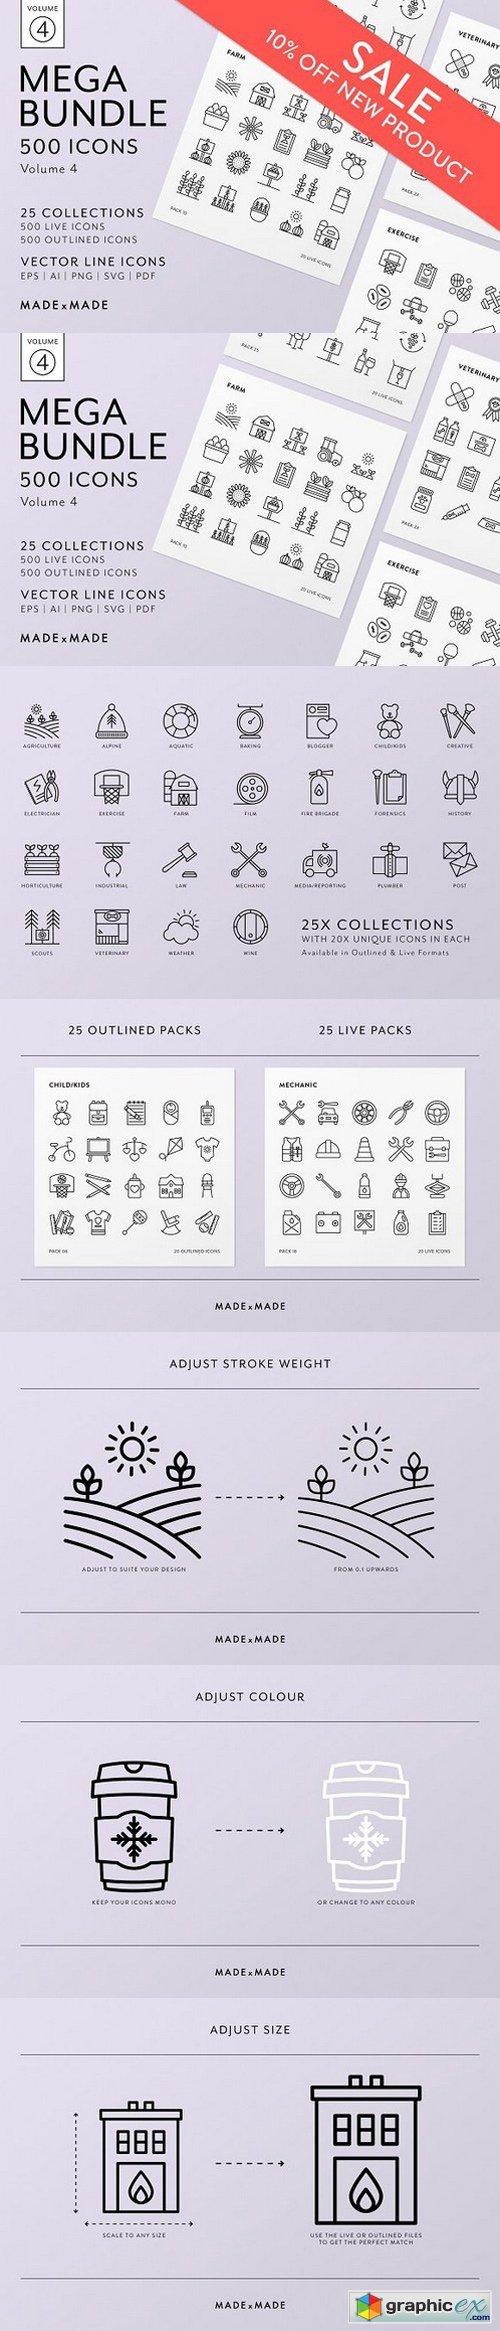 Mega Pack | 500 Vector Icons � Vol 4